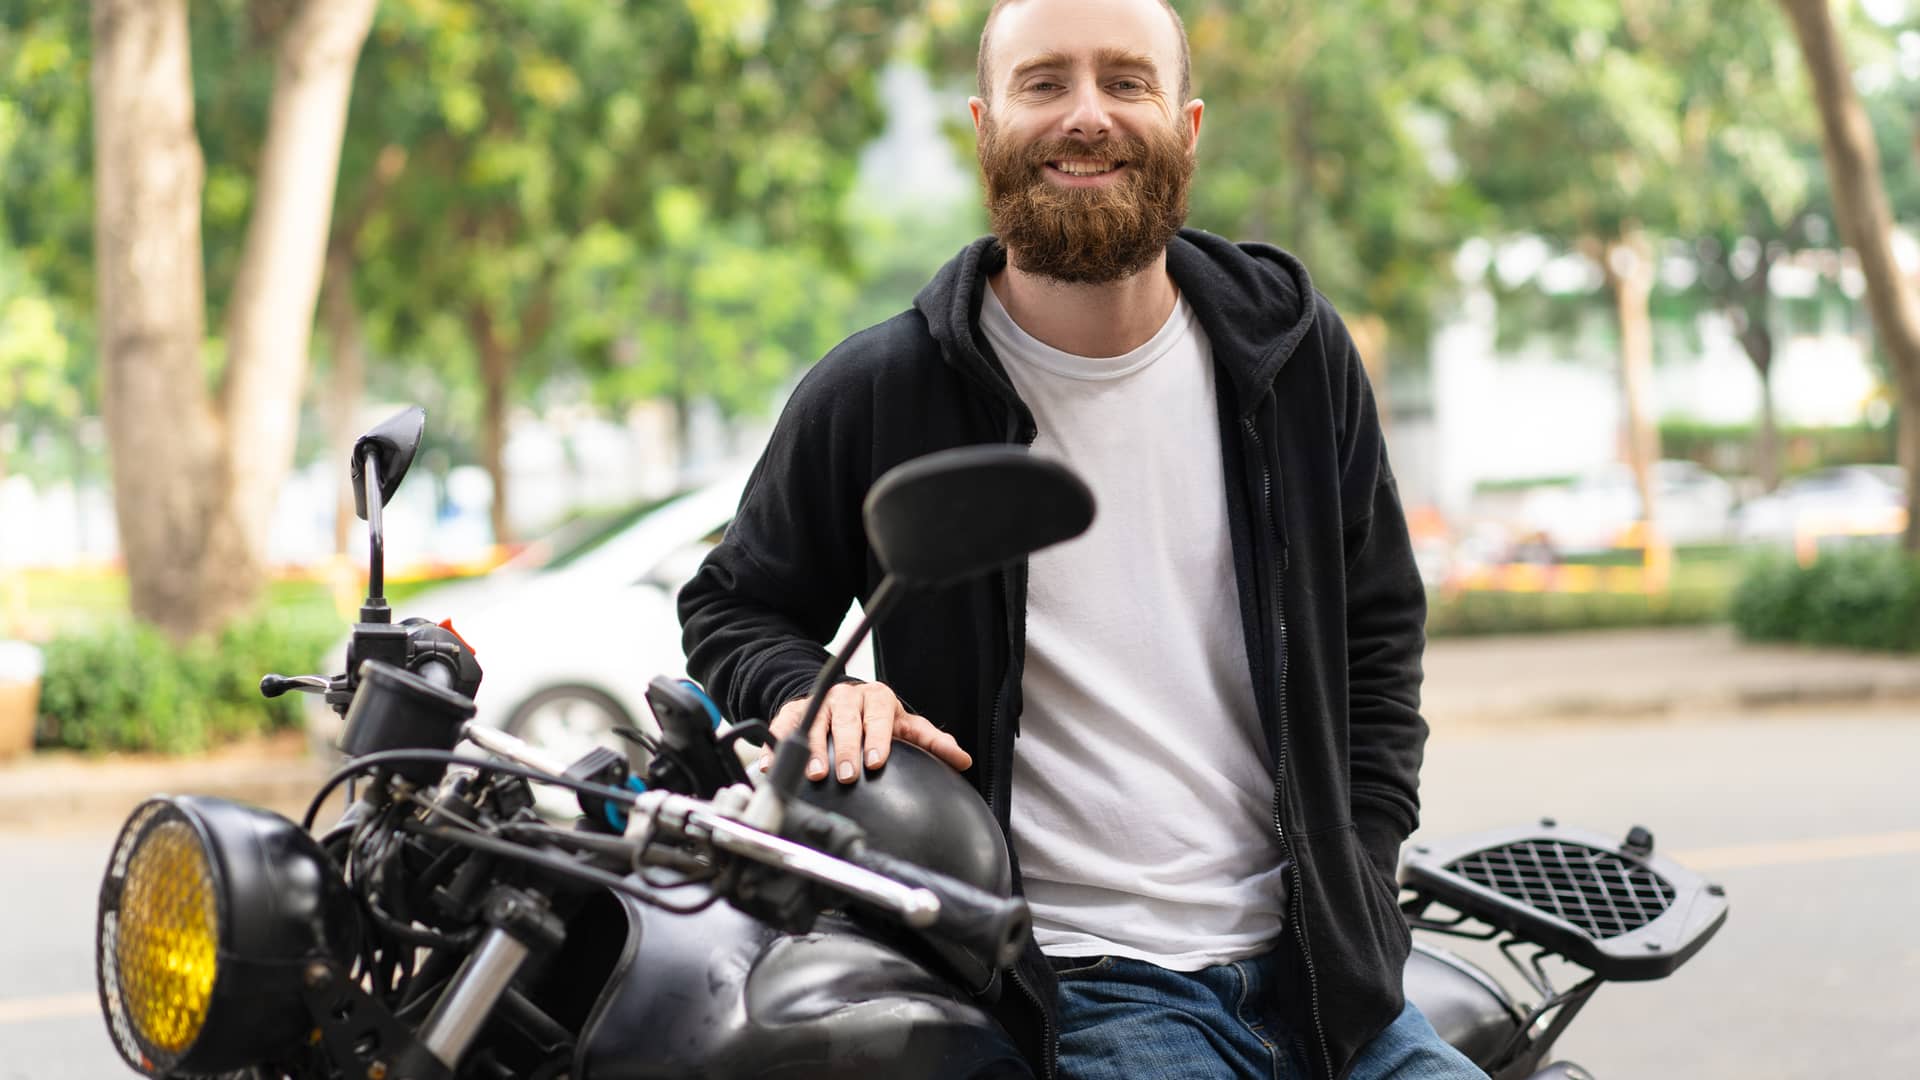 Joven sonriente sentado en su motocicleta de 150 cc con seguro contratado